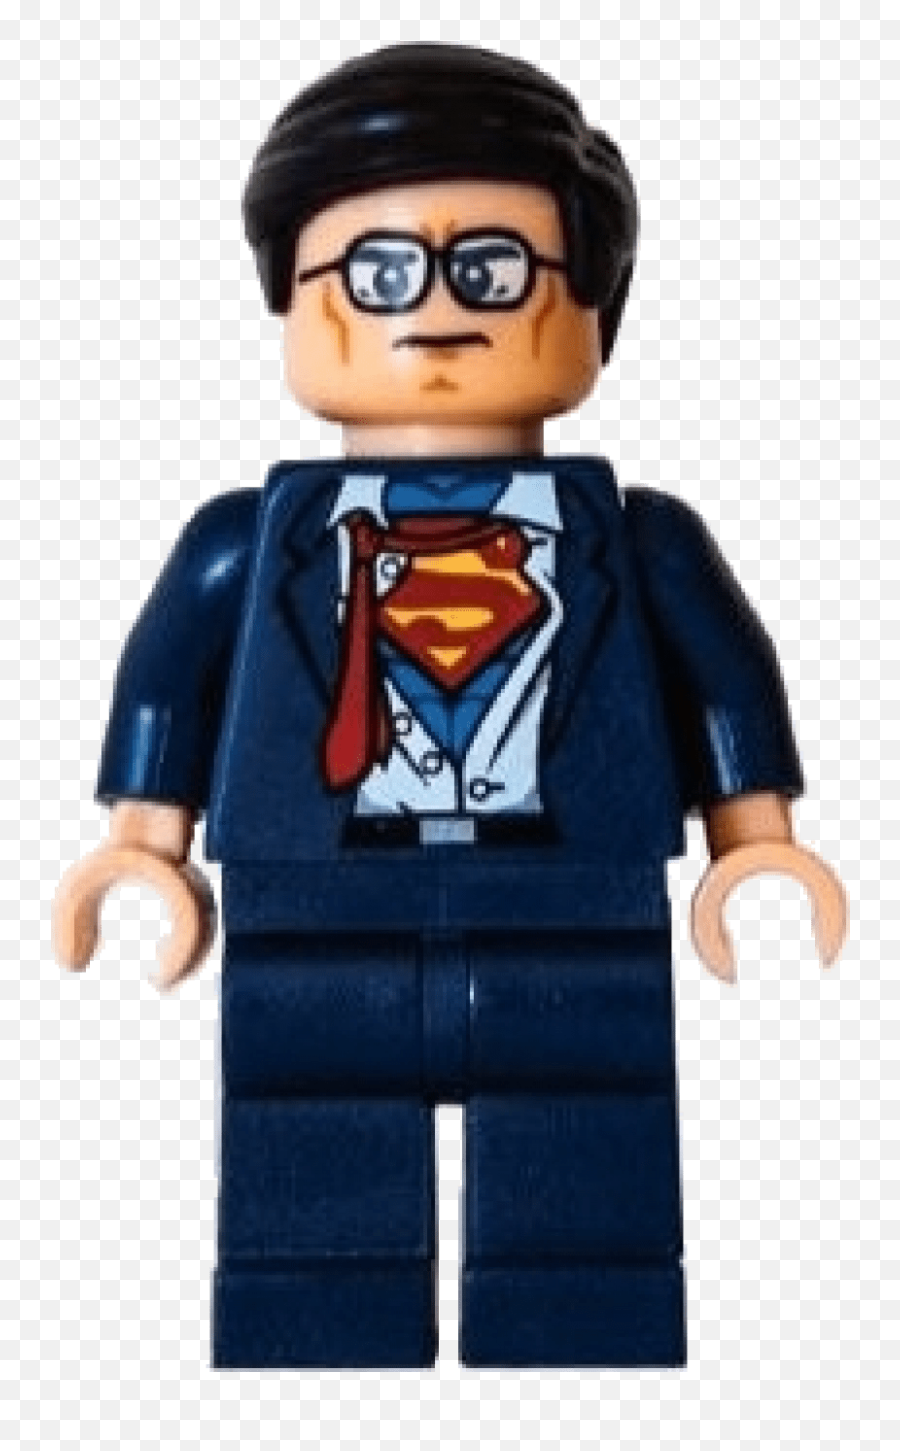 Pathbrite - Portfolio Lego Batman Clark Kent Png,Lego Batman Png